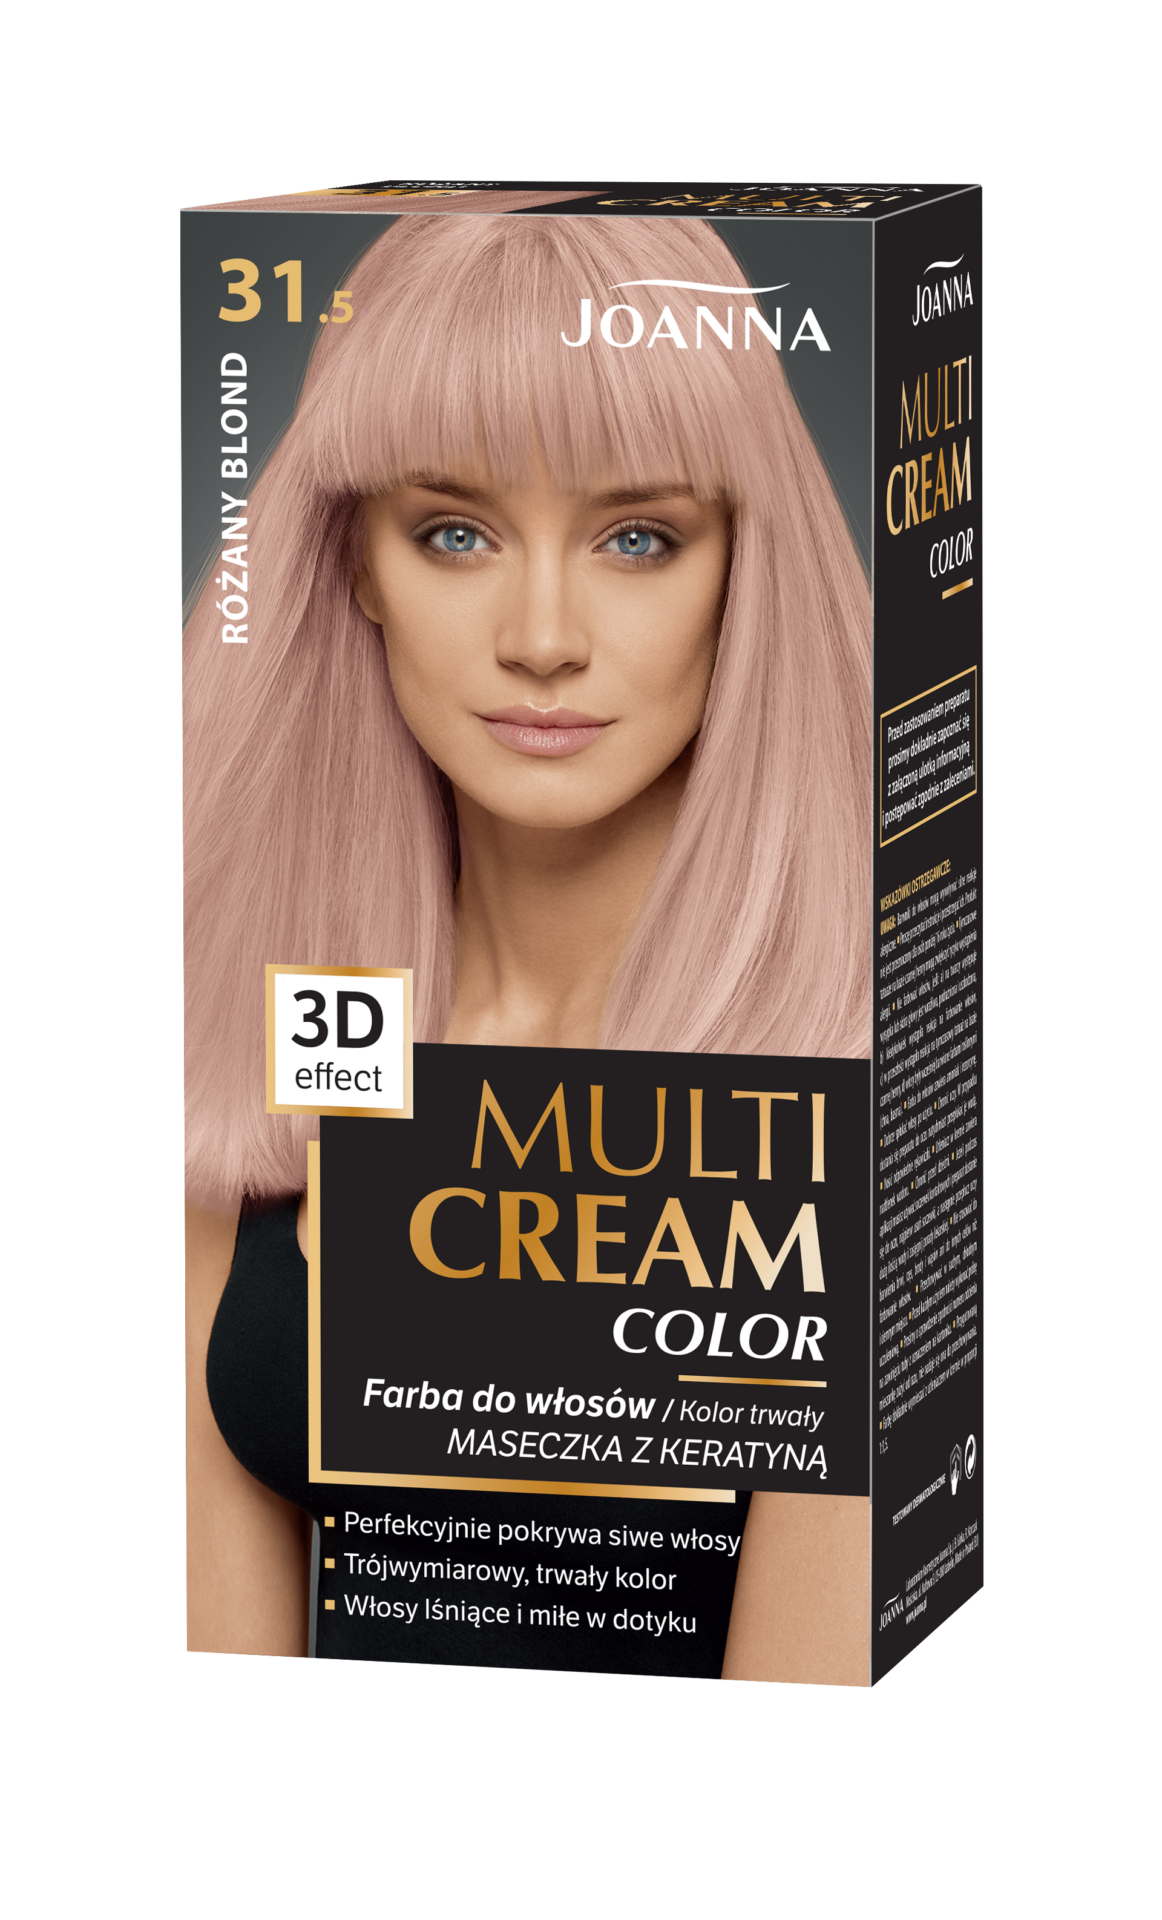 Trwała farba do włosów Joanna Multi Cream Color w odcieniu różany blond nr 31.5